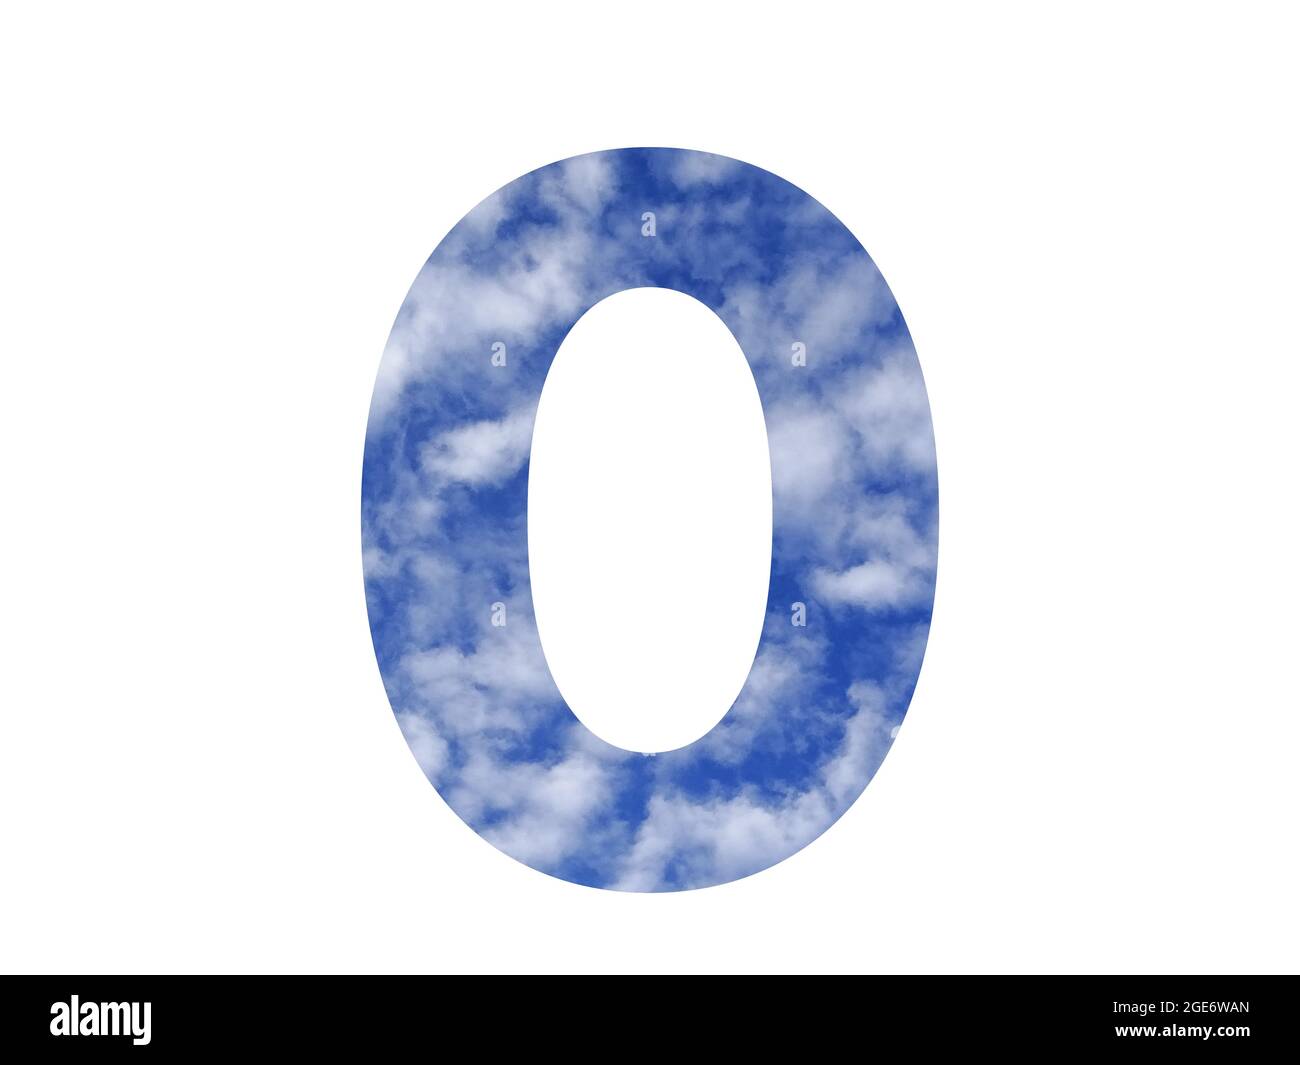 Lettera o dell'alfabeto fatta con cielo blu e nuvole bianche, isolata su sfondo bianco Foto Stock